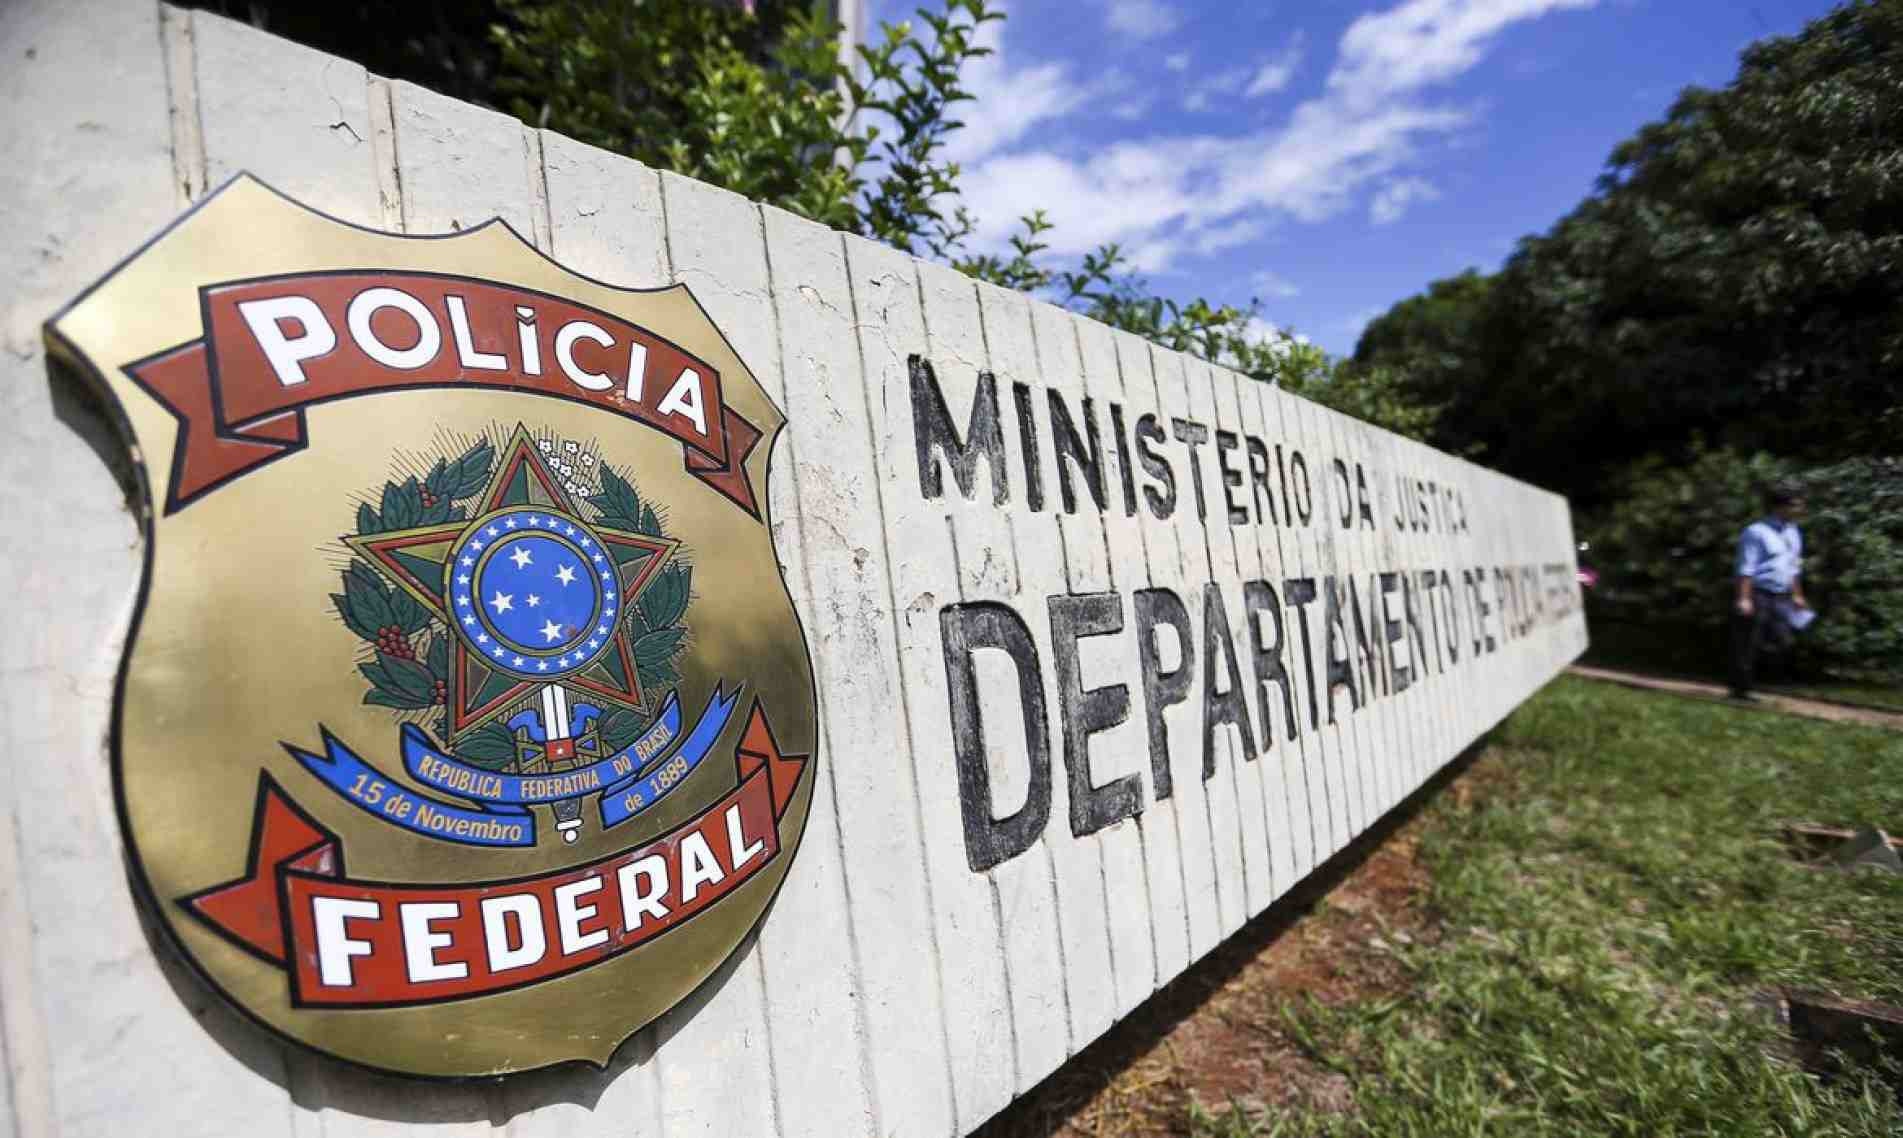 Sede da Polícia Federal em Brasília.